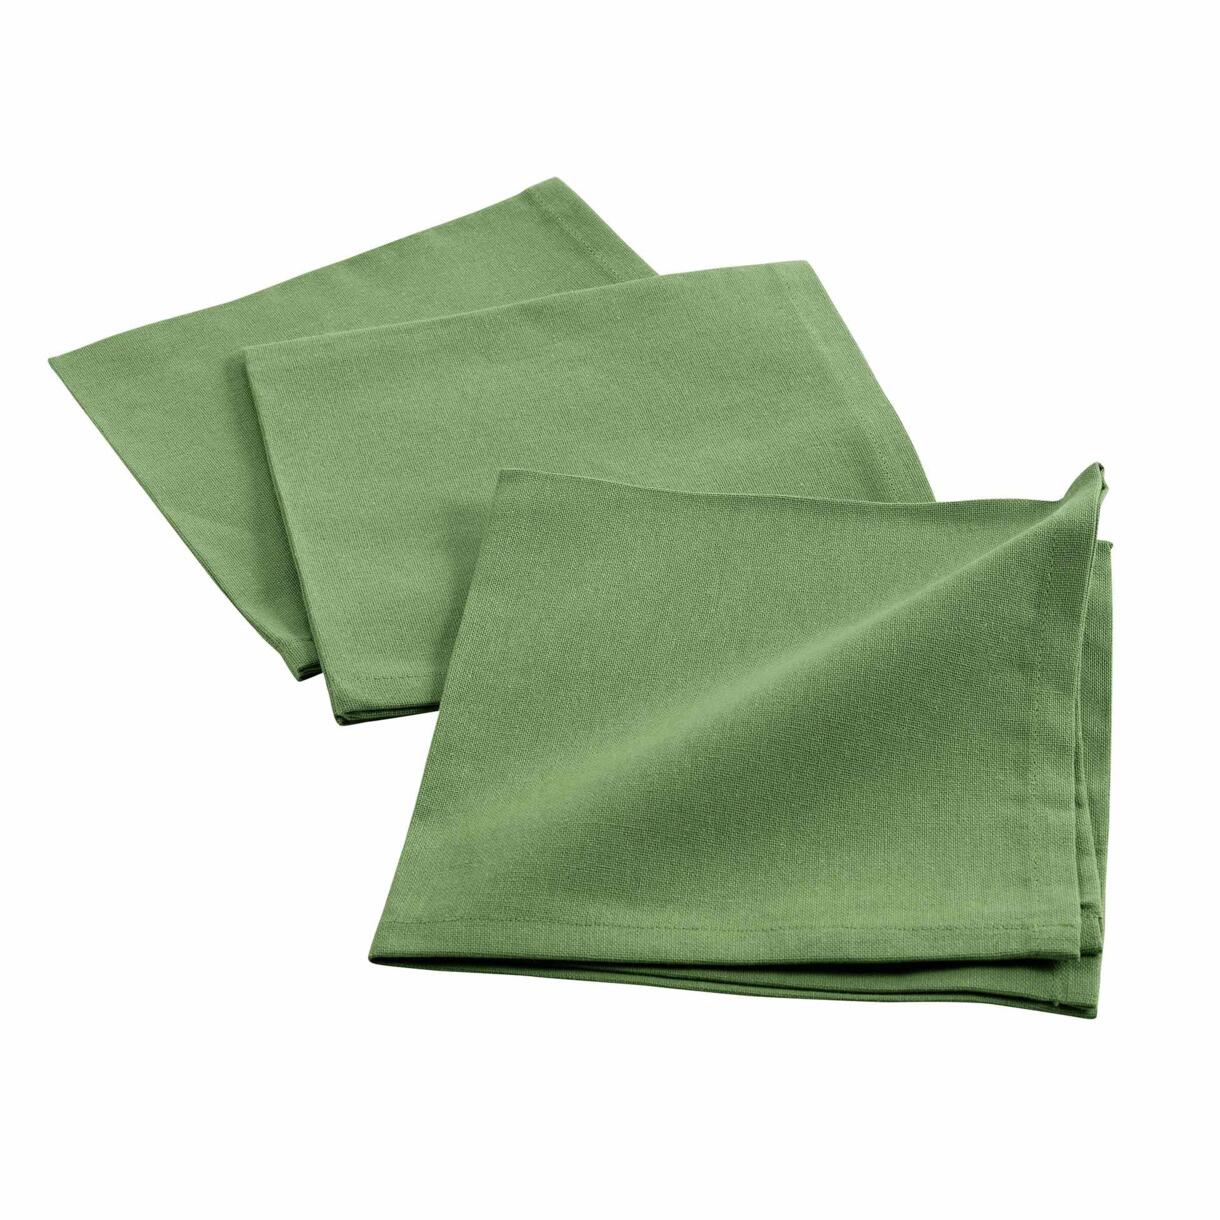 Lote de 3 servilletas algodón Initia Verde kaki 1